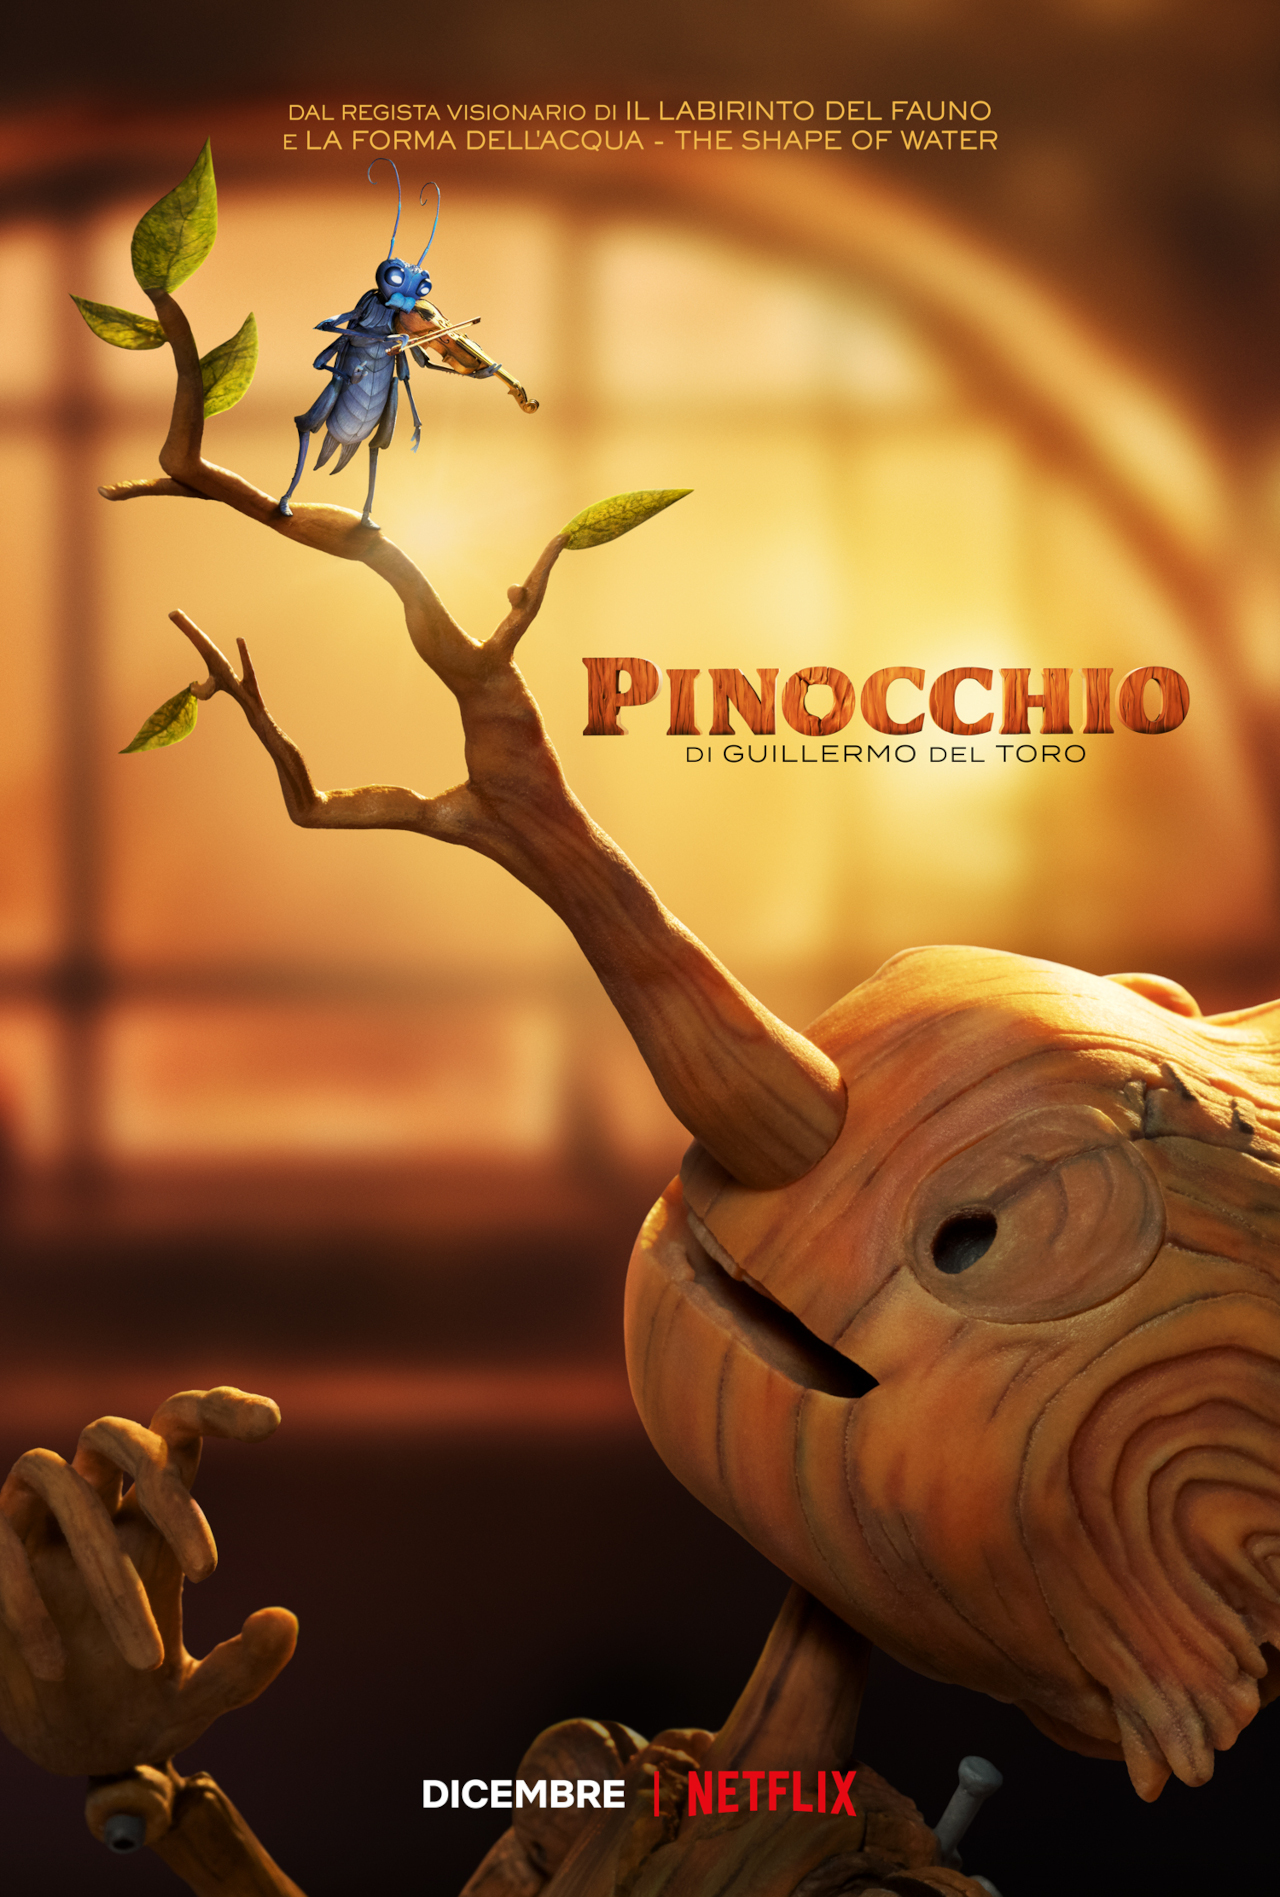 Pinocchio Di Guillermo Del Toro Poster